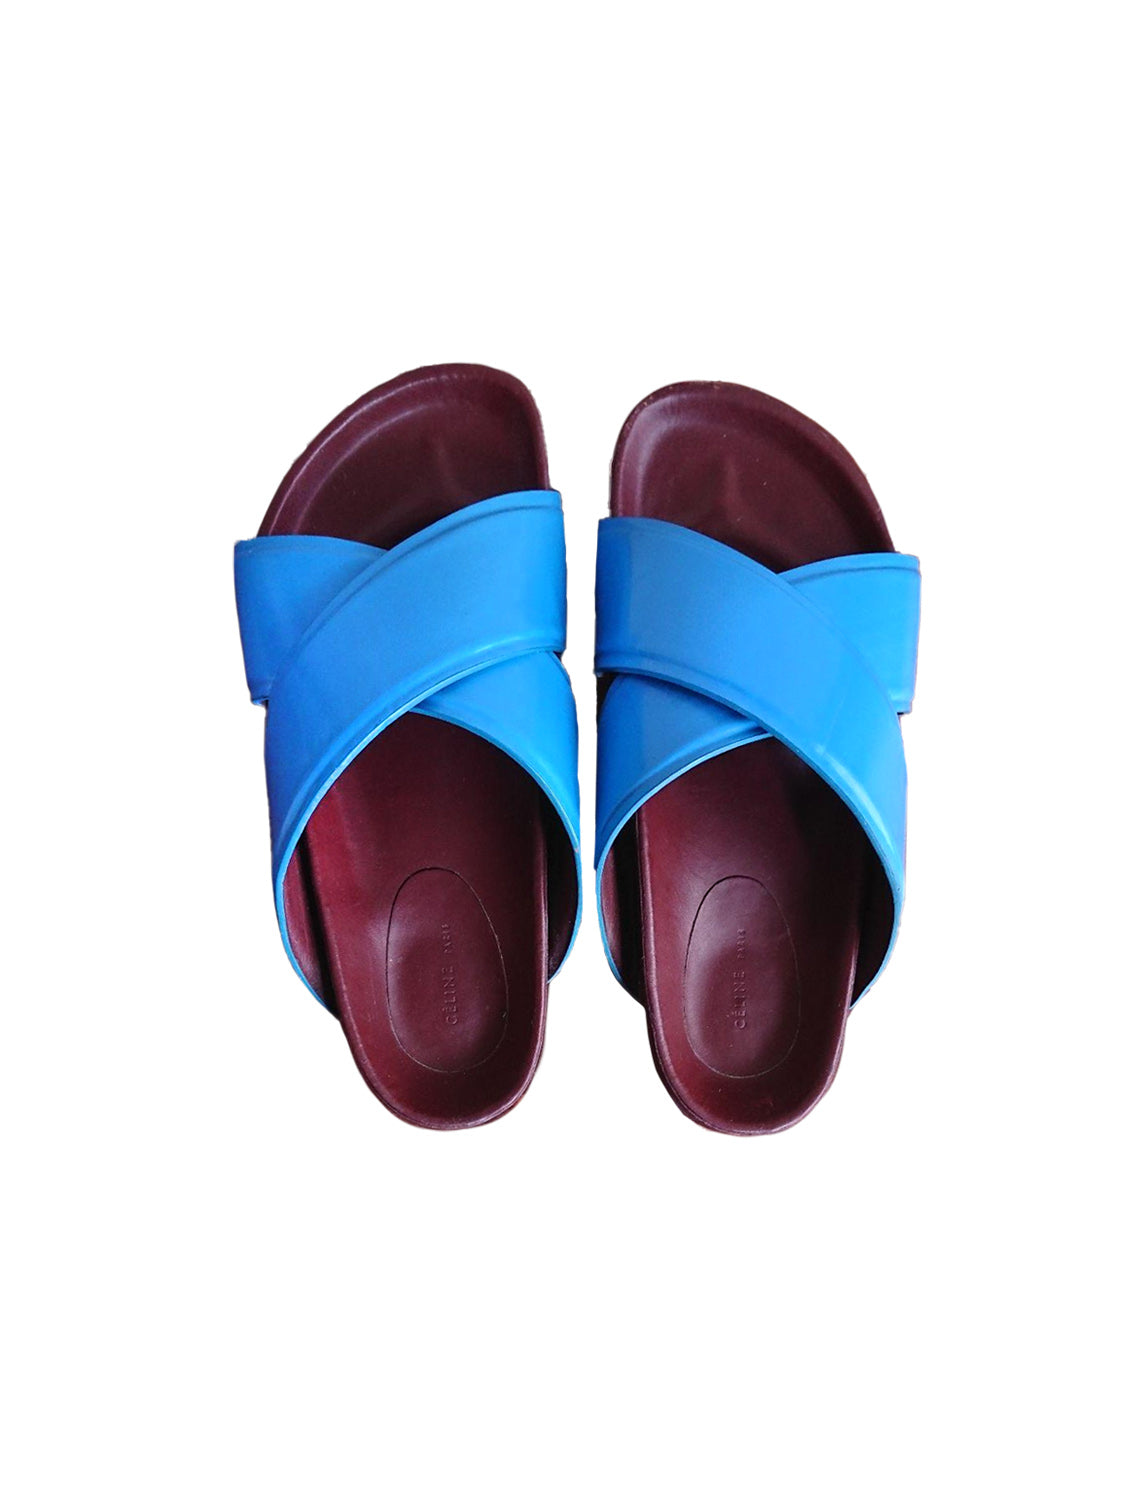 Celine by Phoebe Philo 2014 Blue Criss Cross Sandals